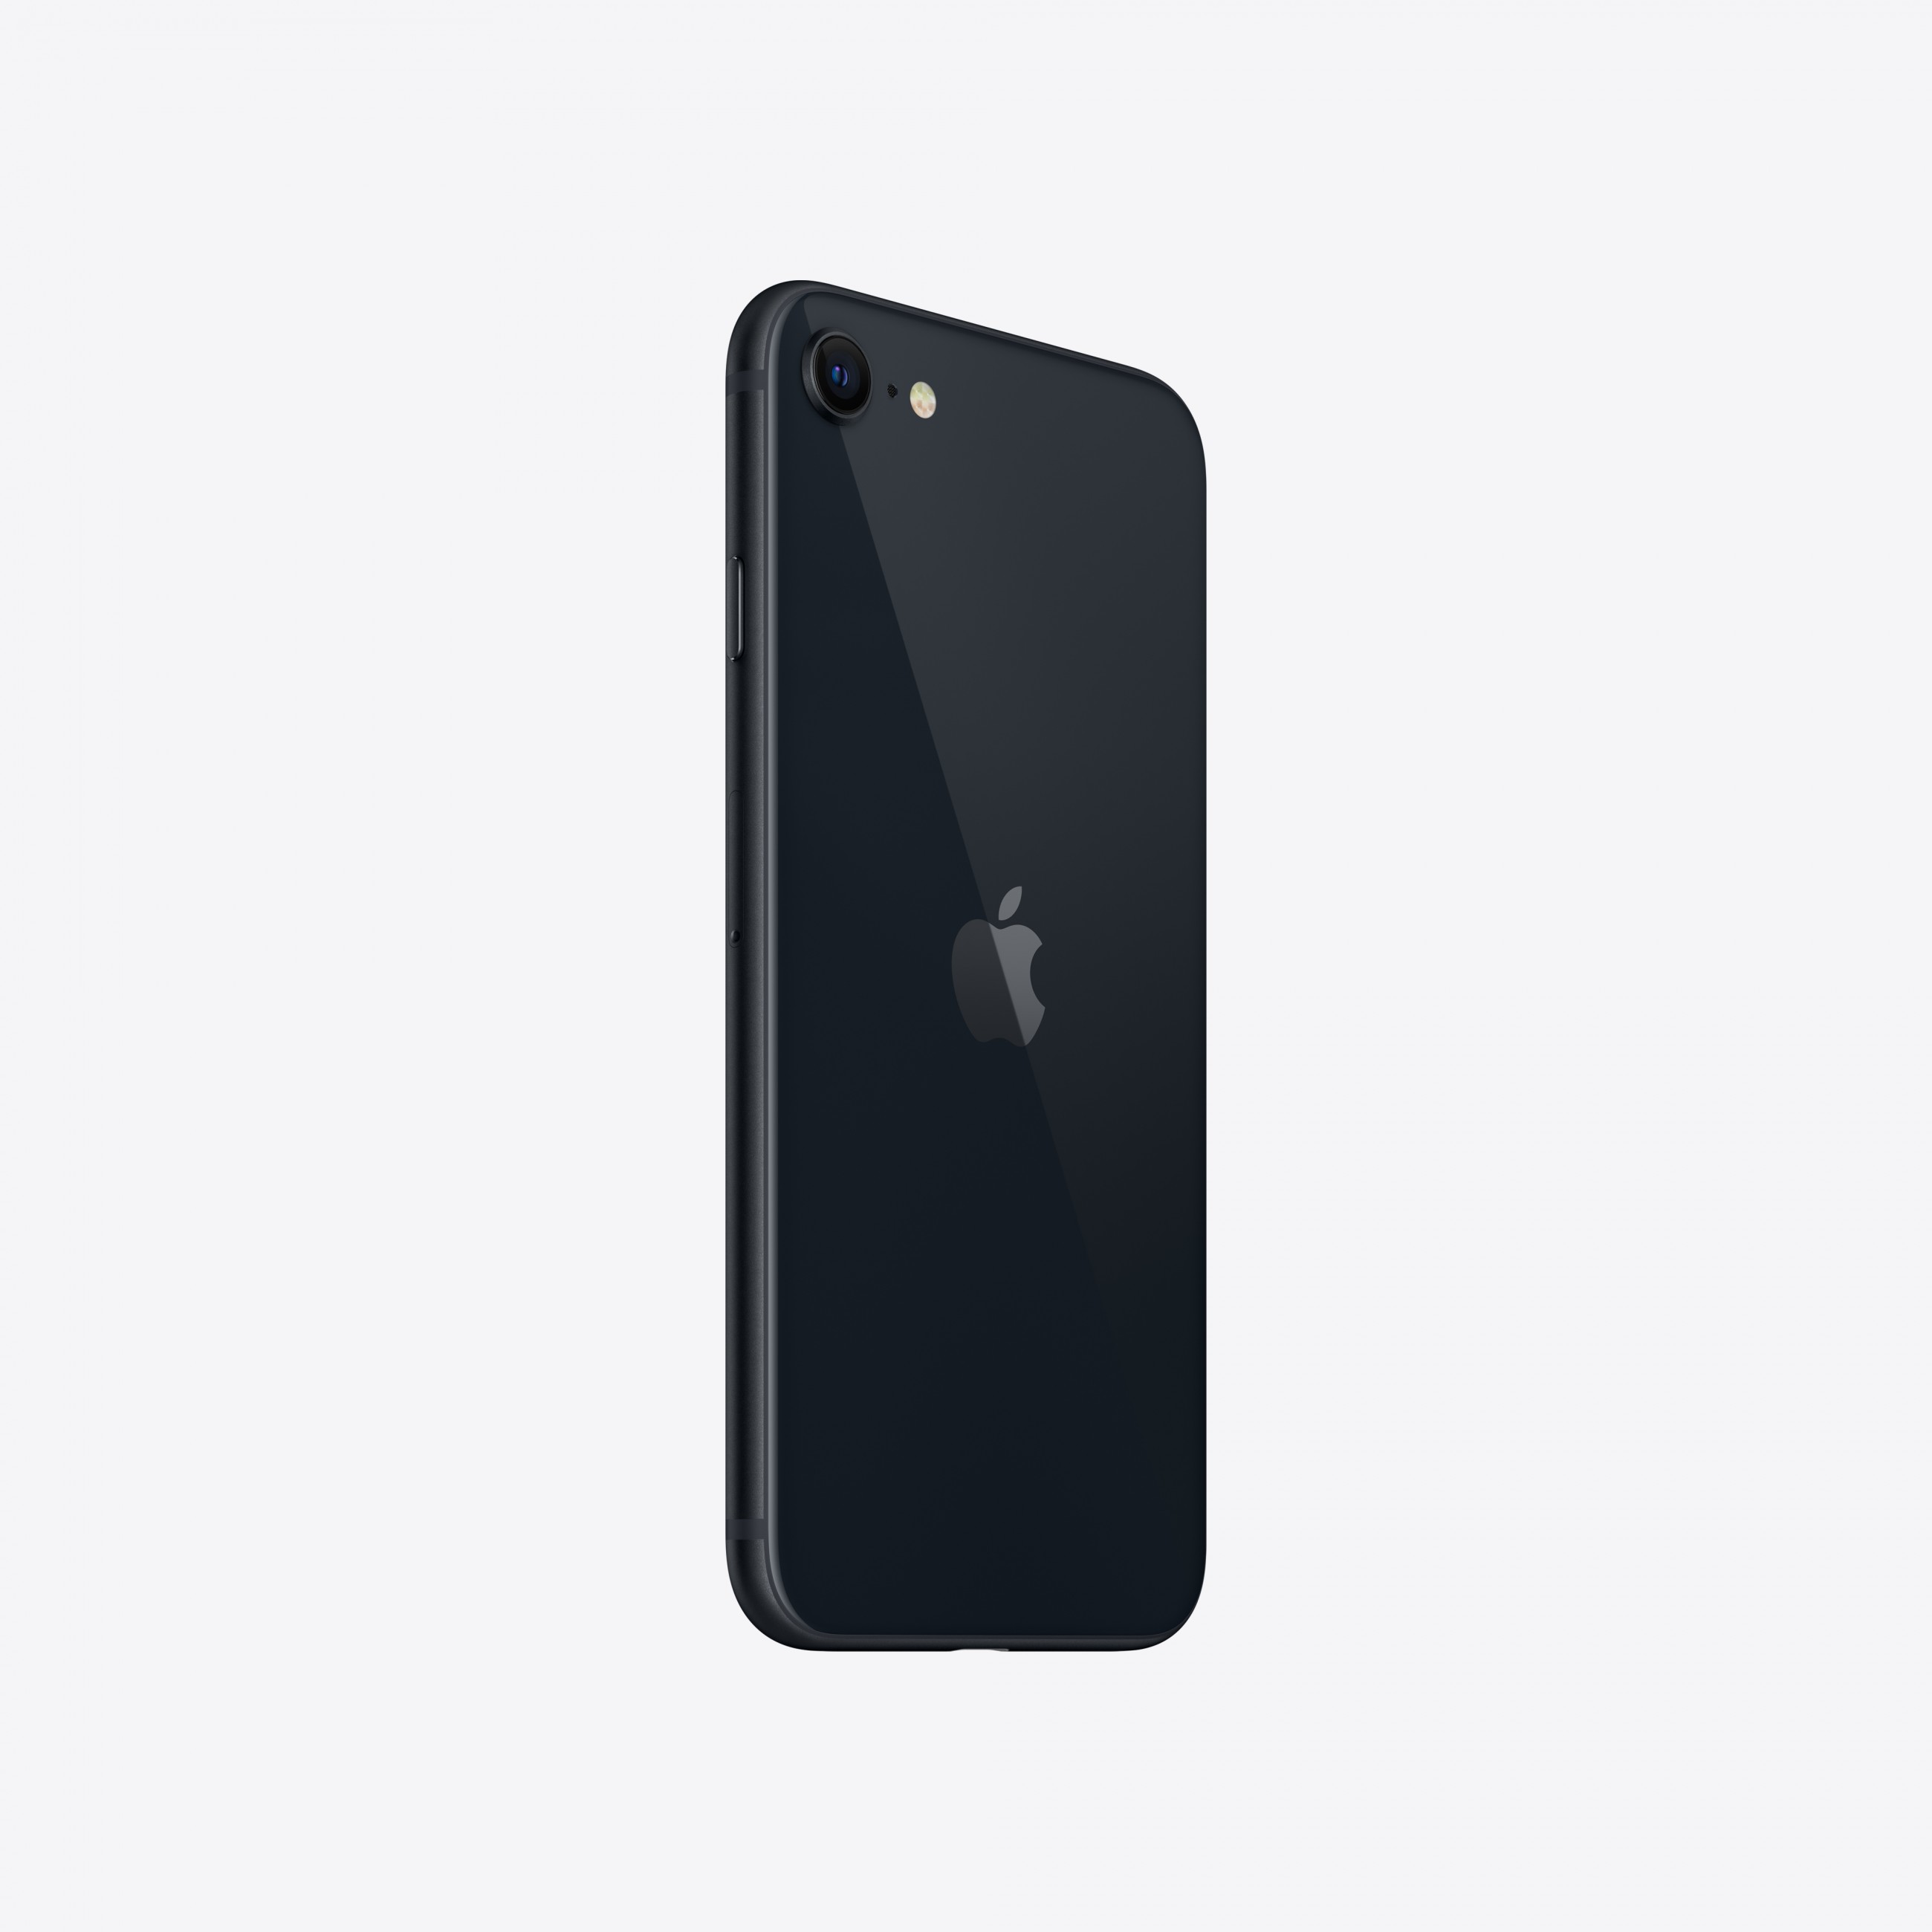 Apple iPhone SE 11,9 cm (4.7 Zoll) Dual-SIM iOS 15 5G 256 GB Schwarz